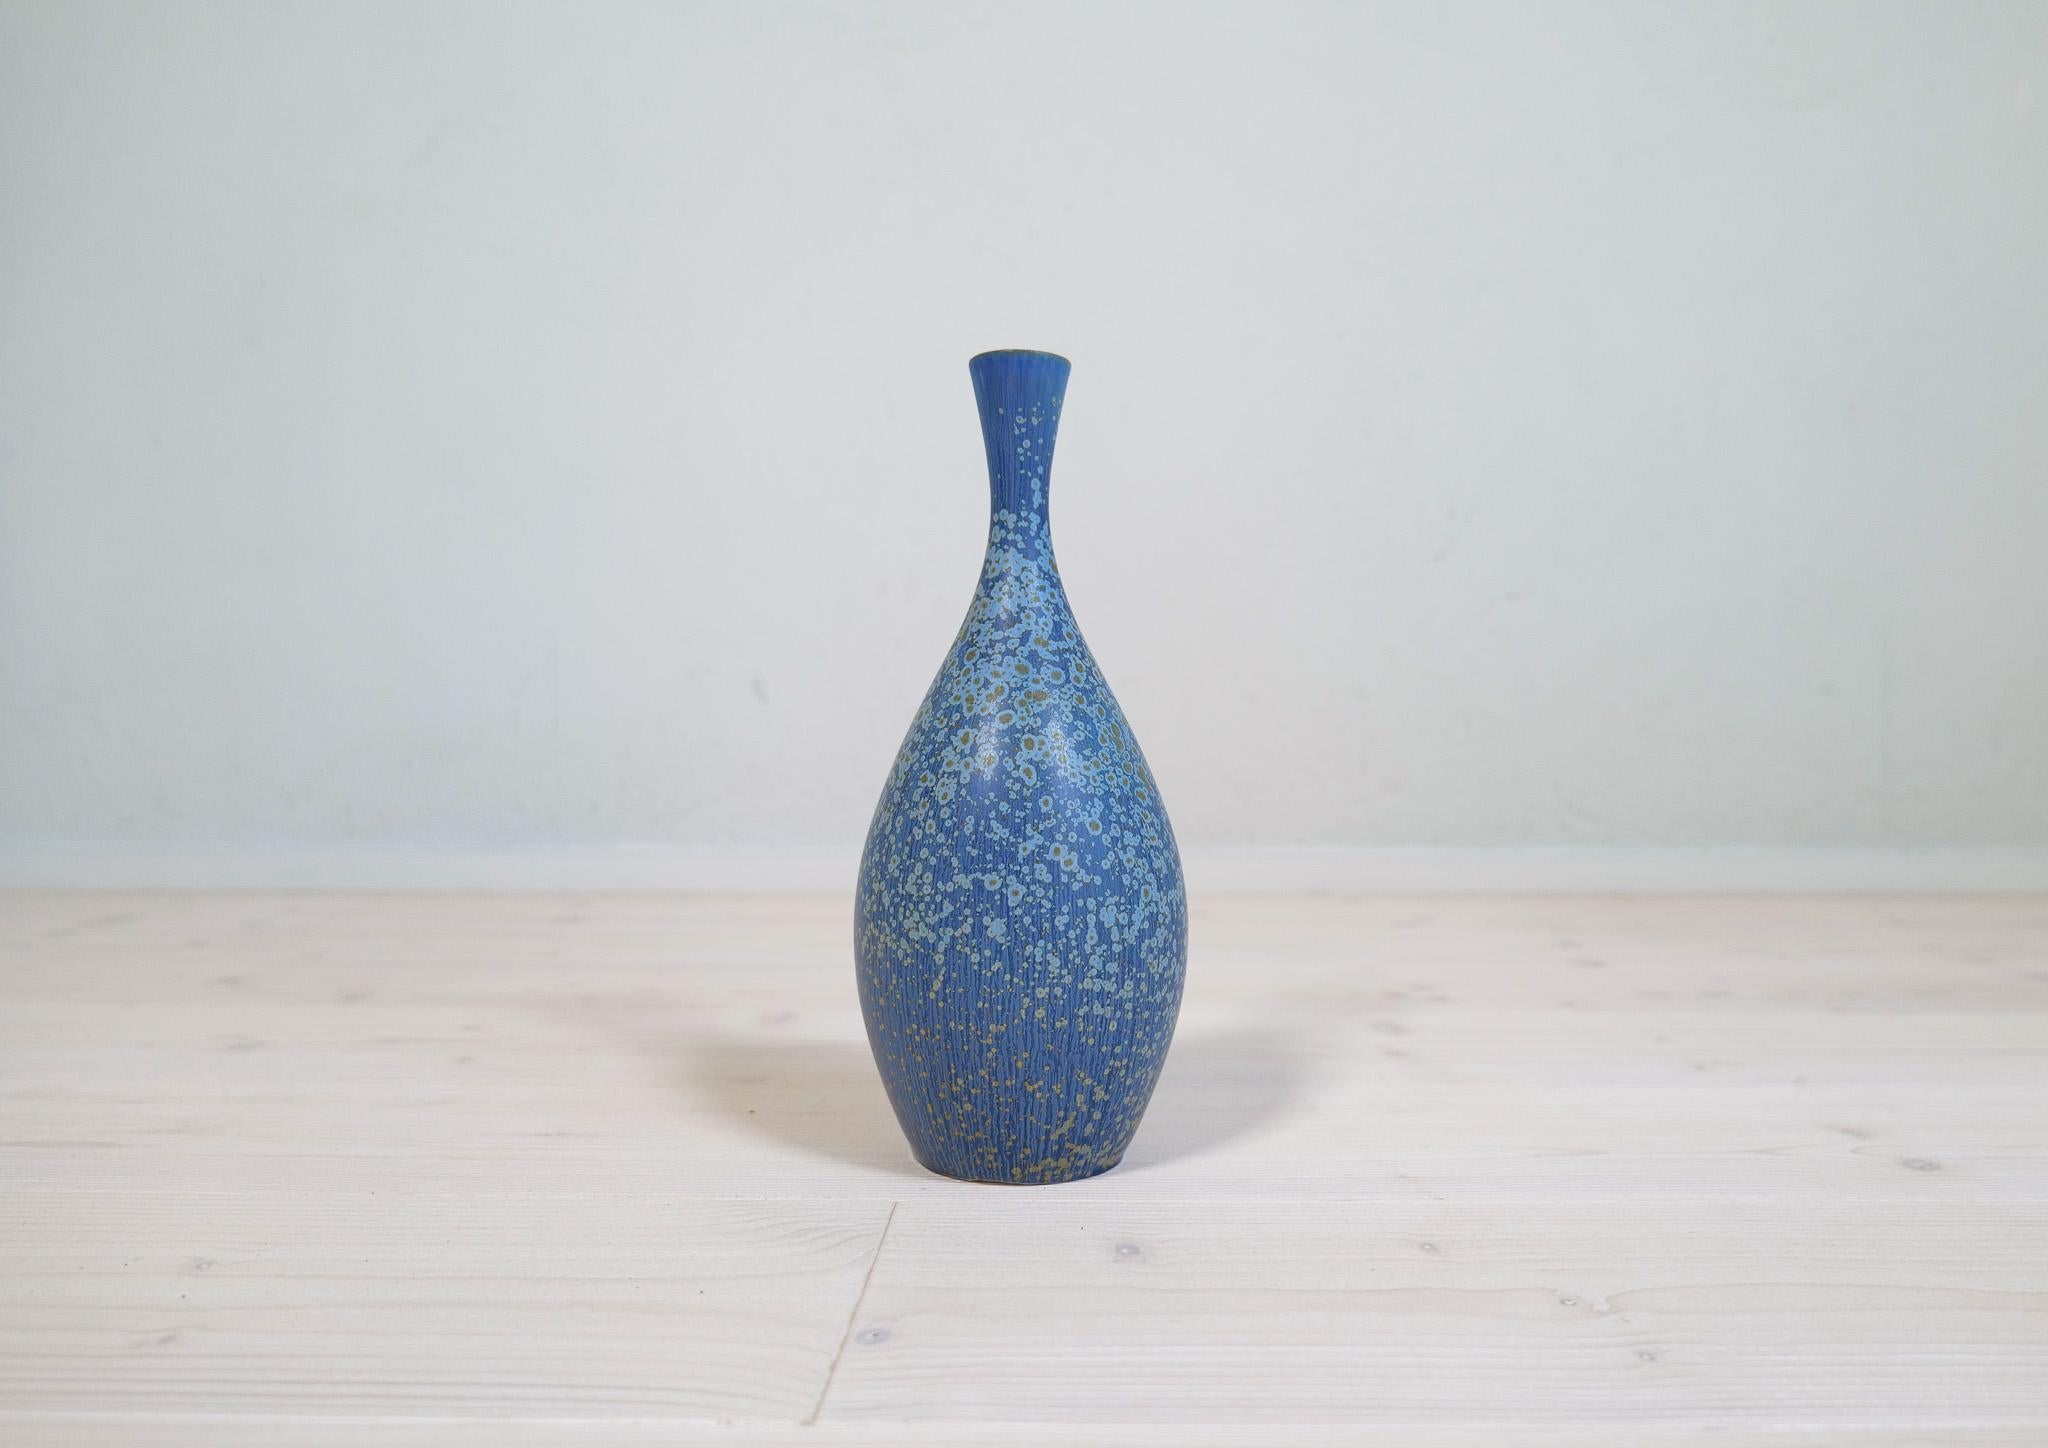 Cette étonnante pièce de céramique a été produite par Rörstrand et le fabricant/designer Carl Harry Stålhane. Fabriqué en Suède dans les années 1950. Exceptionnels vases à glaçure bleue avec de belles lignes. Son fond arrondi avec une glaçure bleue